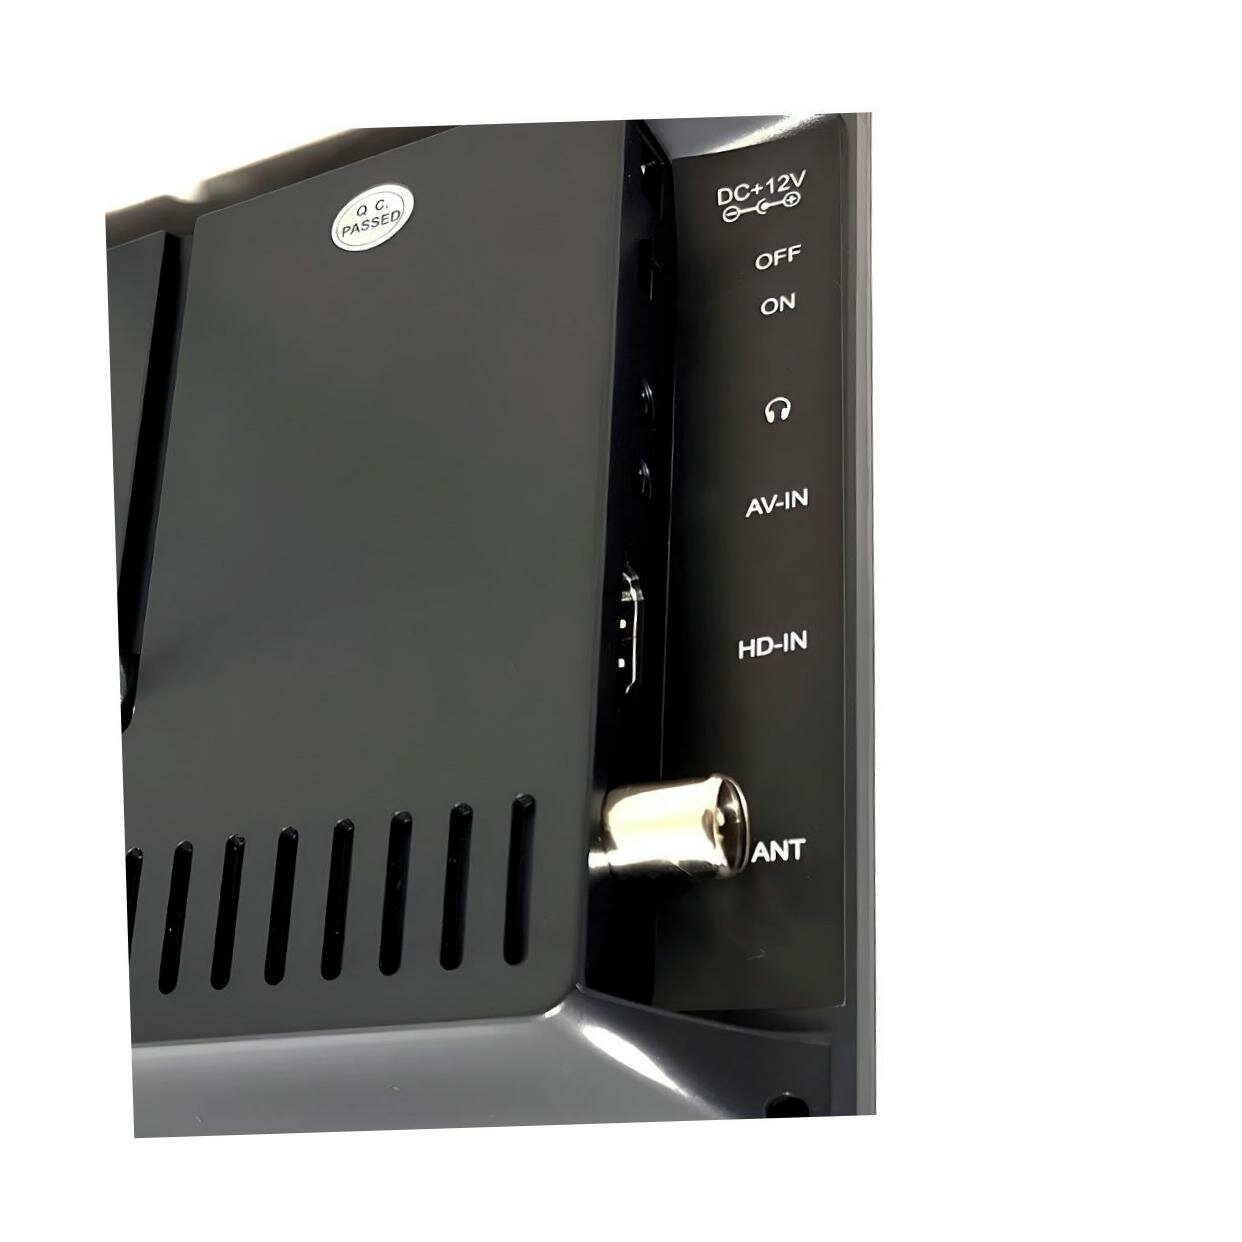 Портативный телевизор Эплутус EP-910TD (EU) (N51747TE) 9дюймов, черный. VGA, HDMI, USB. Экран: 9 цветной TFT ЖК. Разрешение экрана 1200x800.